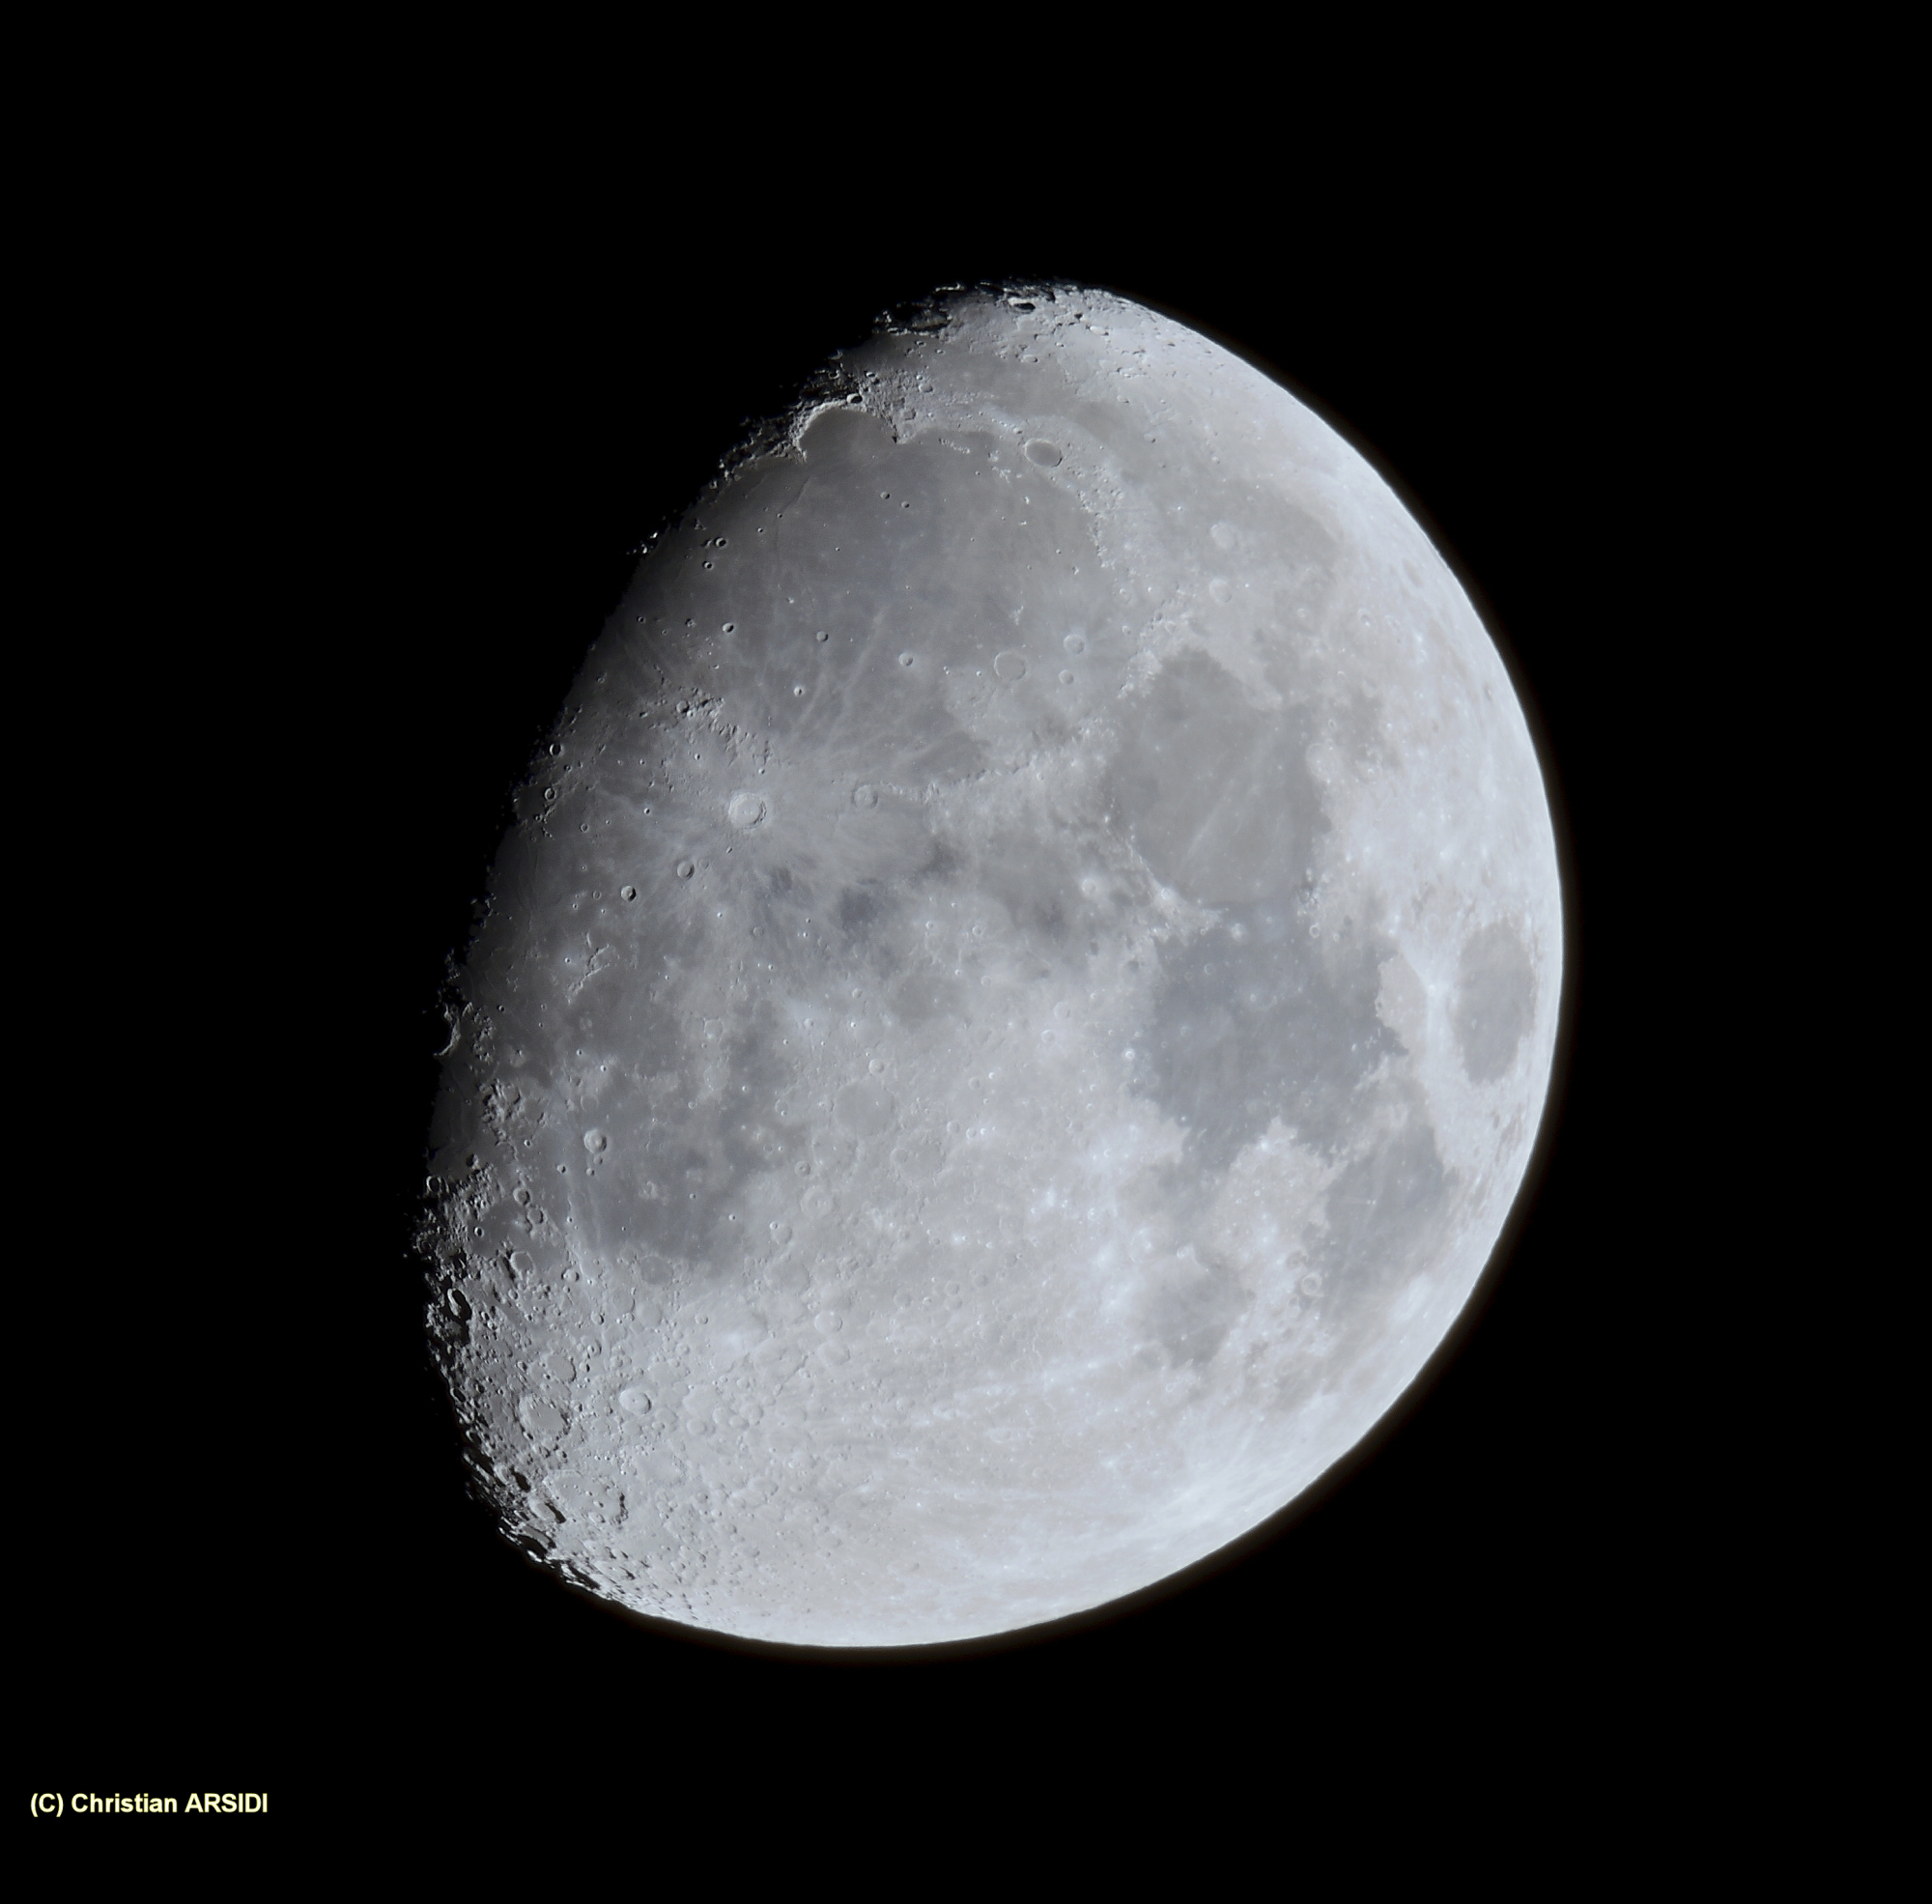 La Lune 6 images recadrée_DxO-1 Bonne Image JPEG.jpg